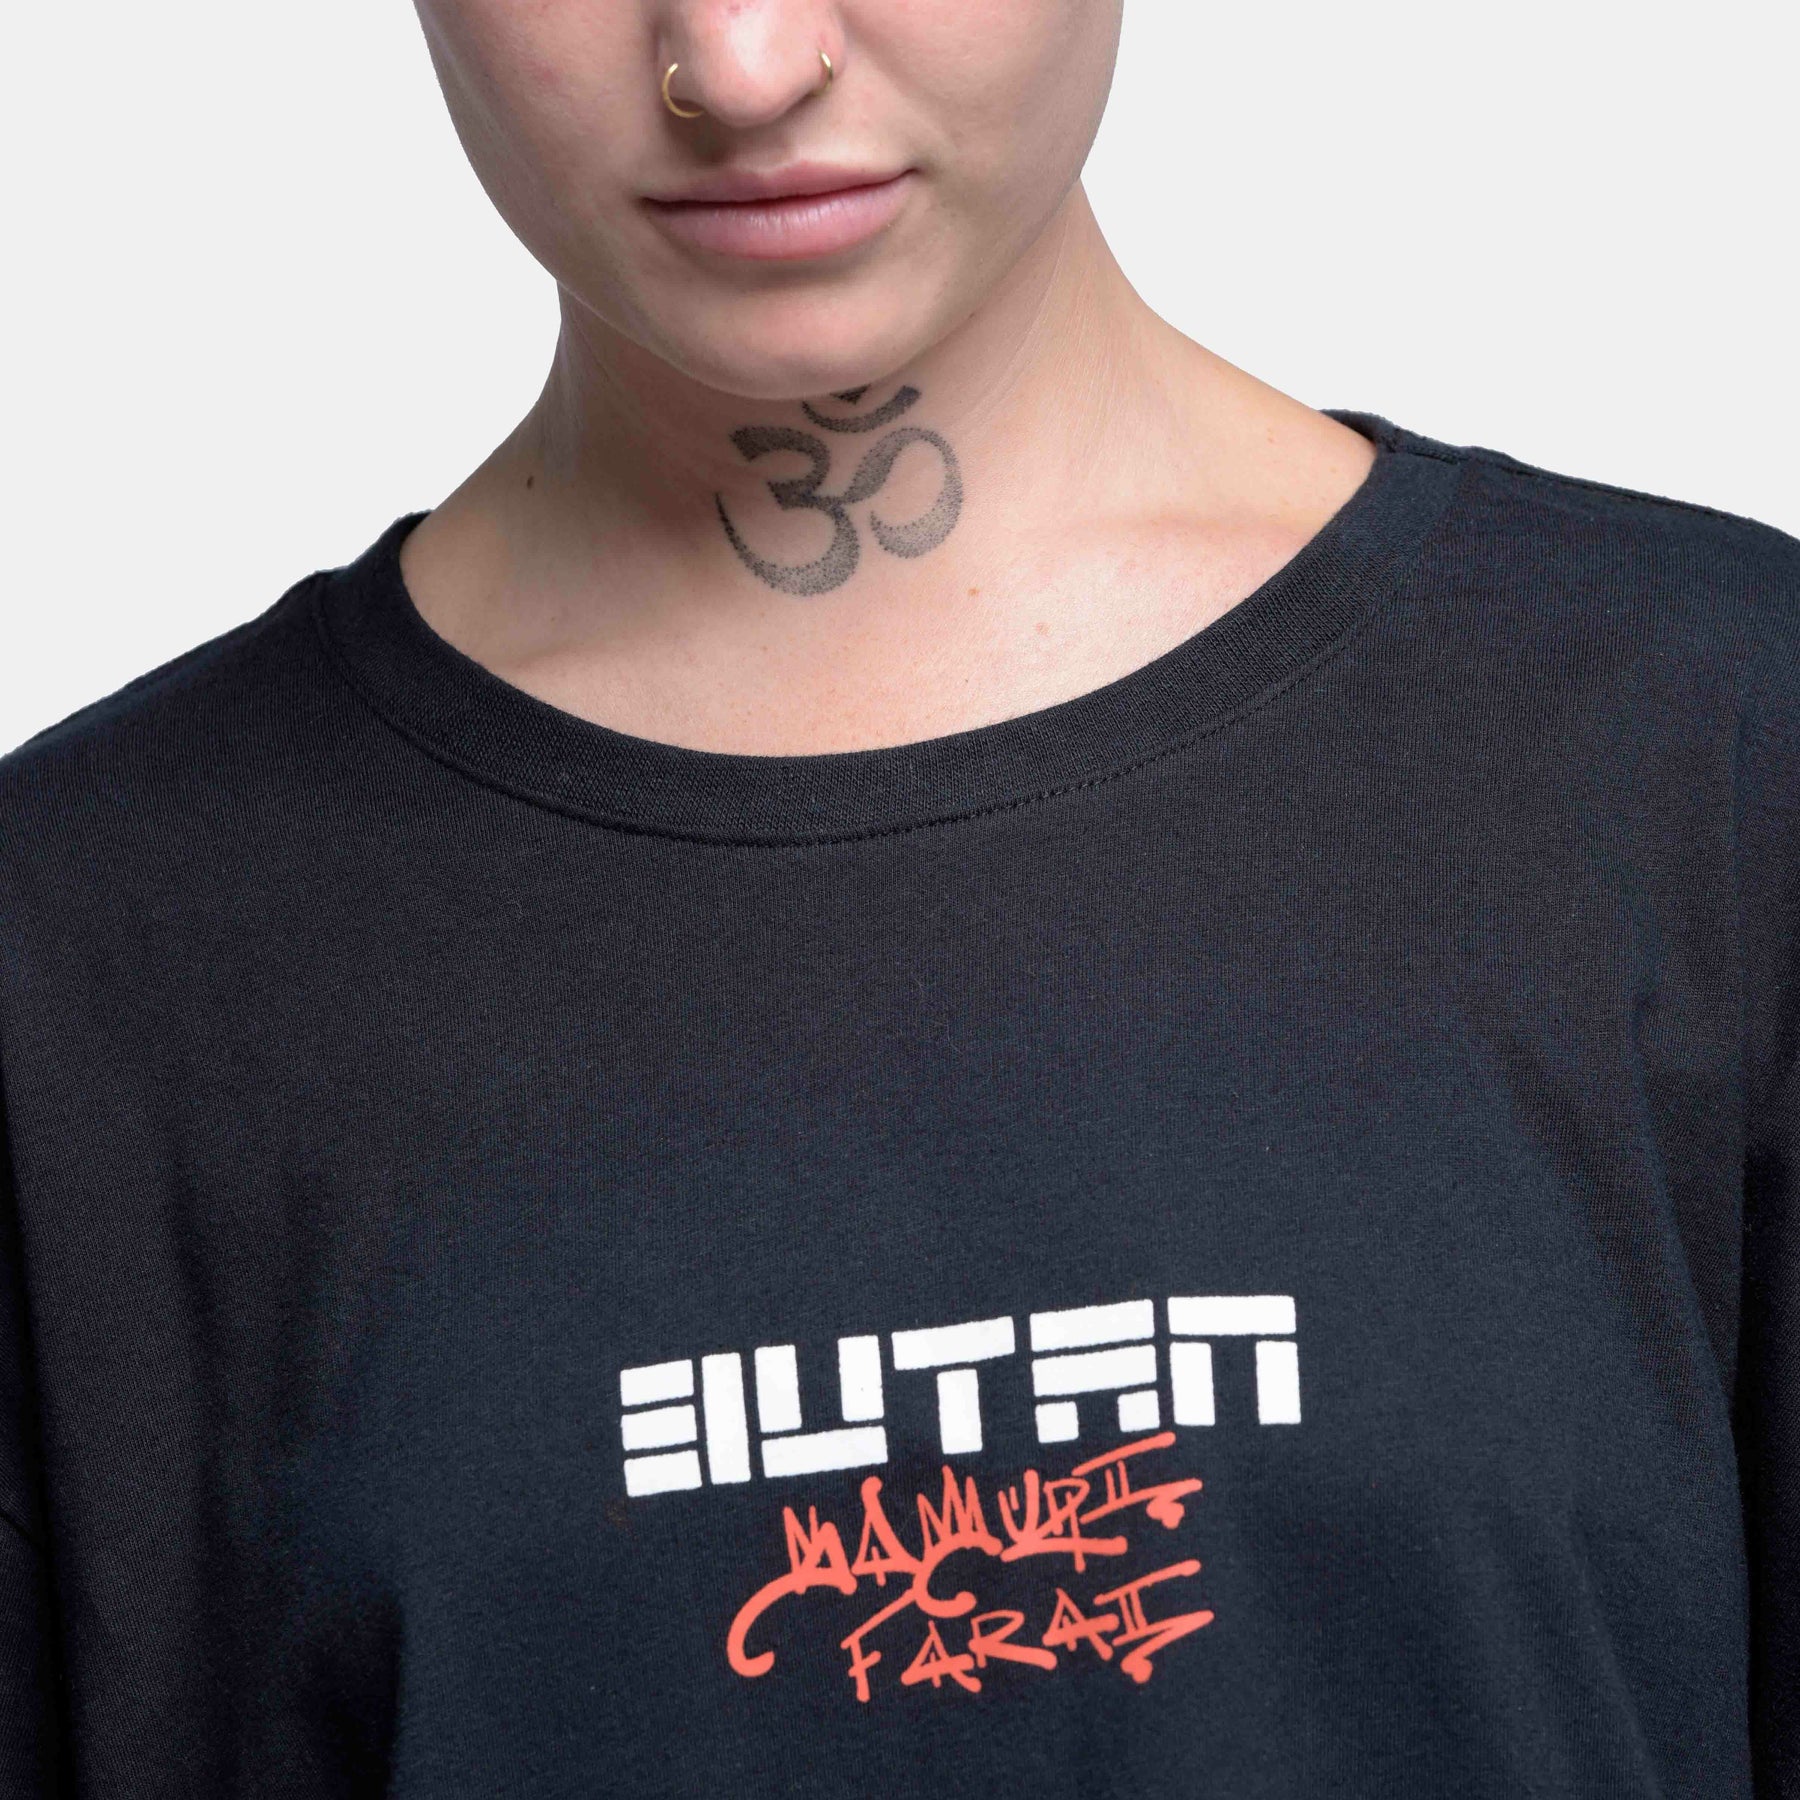 Butan X Samurai Farai | Exclusive T-shirt | Black